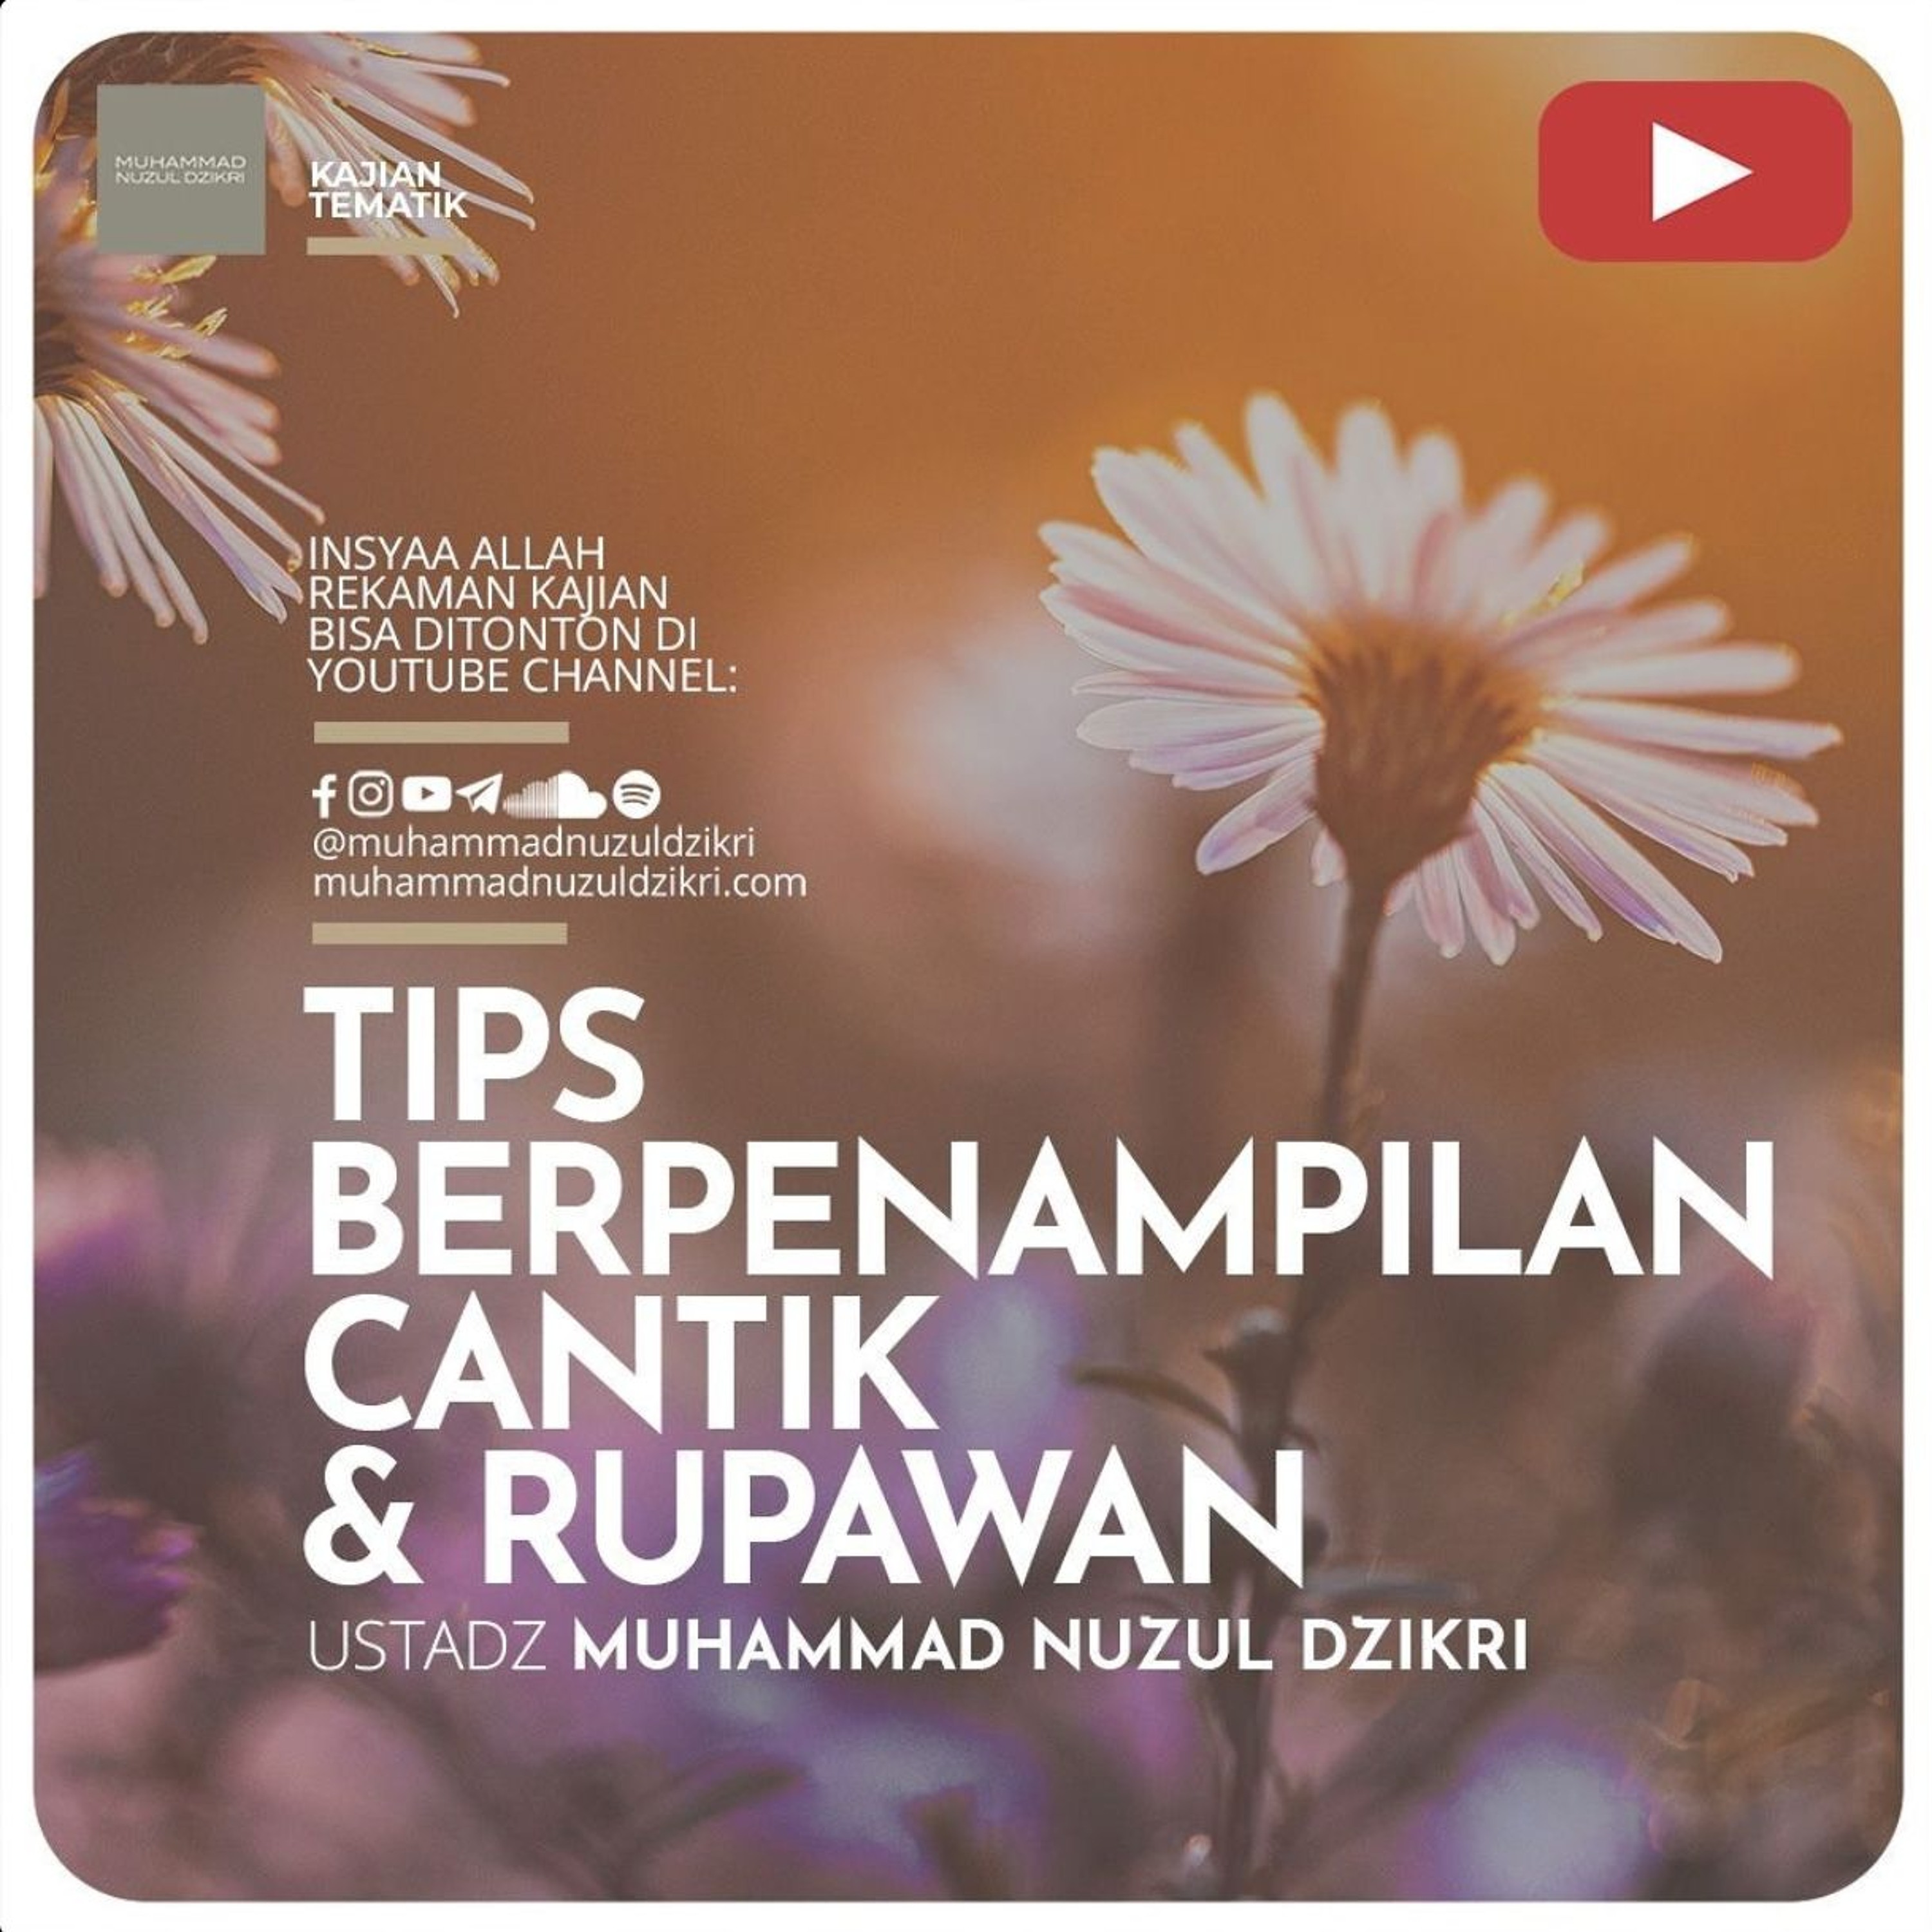 Kajian Tematik Syawwal 03. ”TIPS BERPENAMPILAN CANTIK & RUPAWAN” - Ustadz Muhammad Nuzul Dzikri